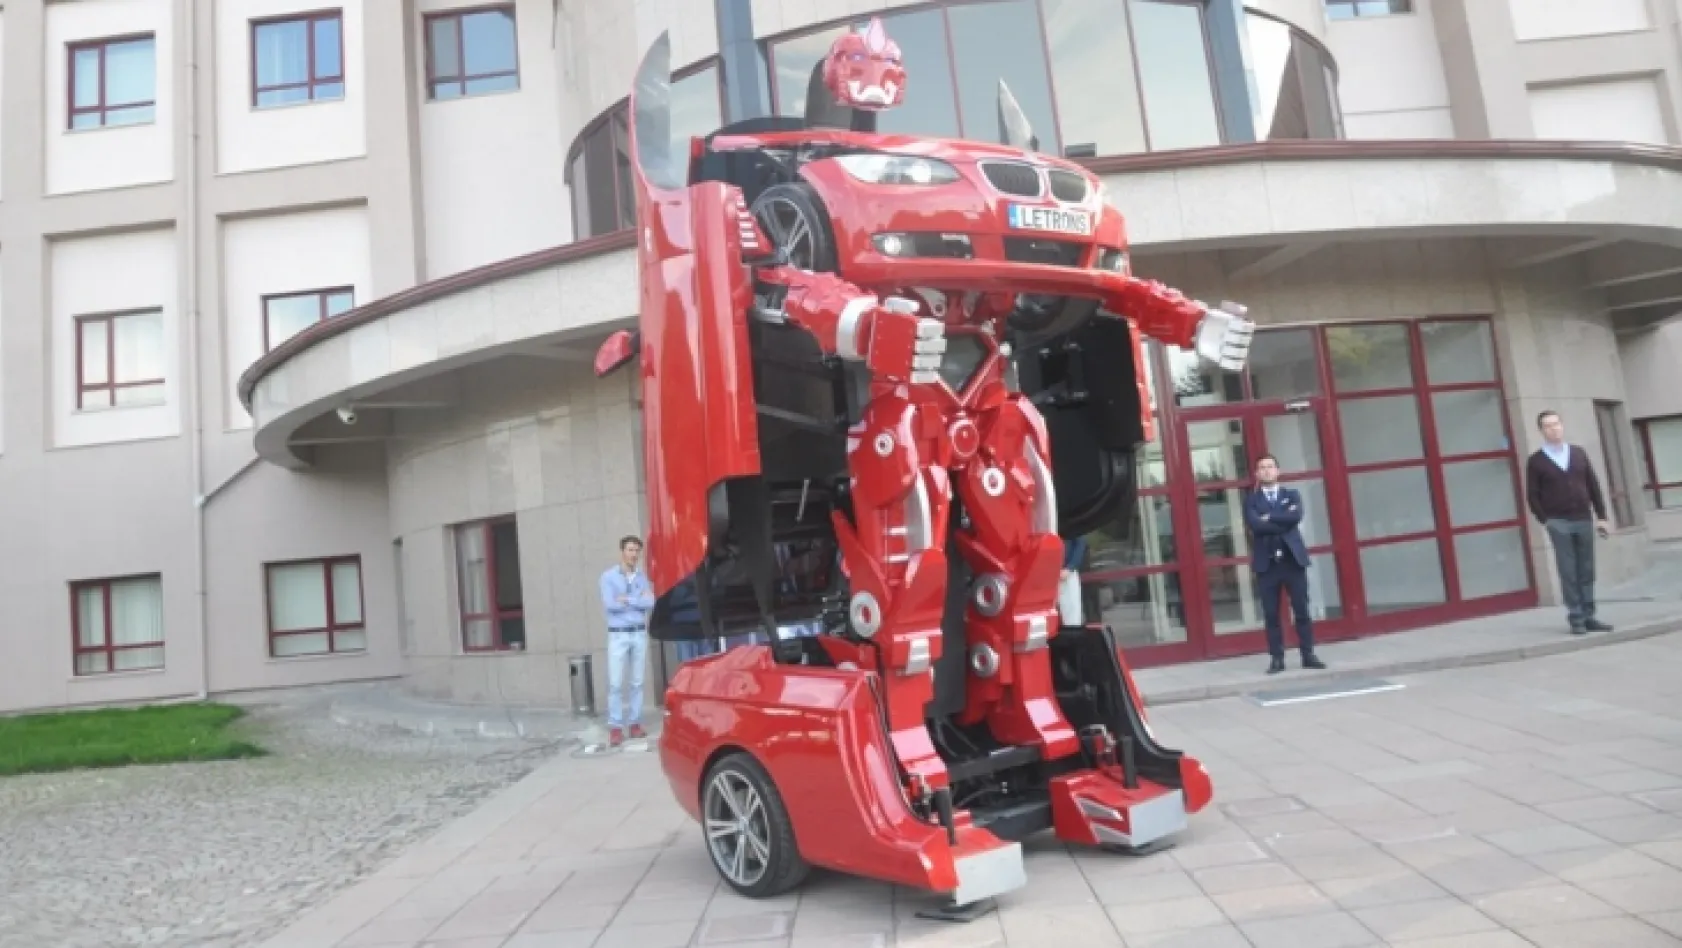 Türk yapımı Transformers Letrons görücüye çıktı